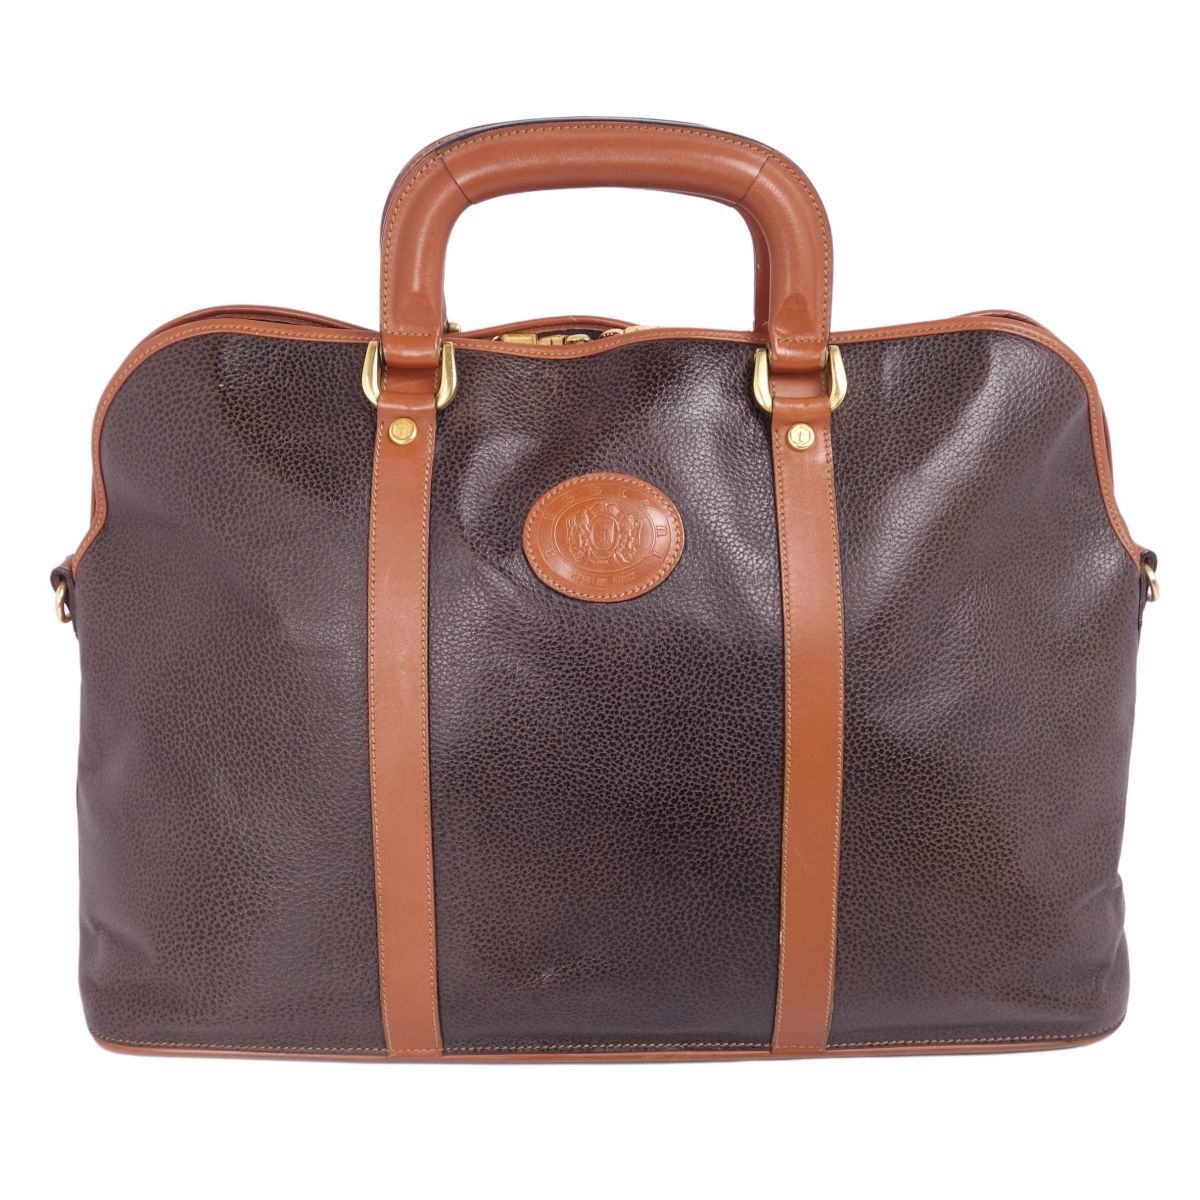  прекрасный товар a тест -nia.testoni сумка сумка "Boston bag" путешествие сумка путешествие портфель машина f кожа портфель мужской Brown cg05os-rm05f03756